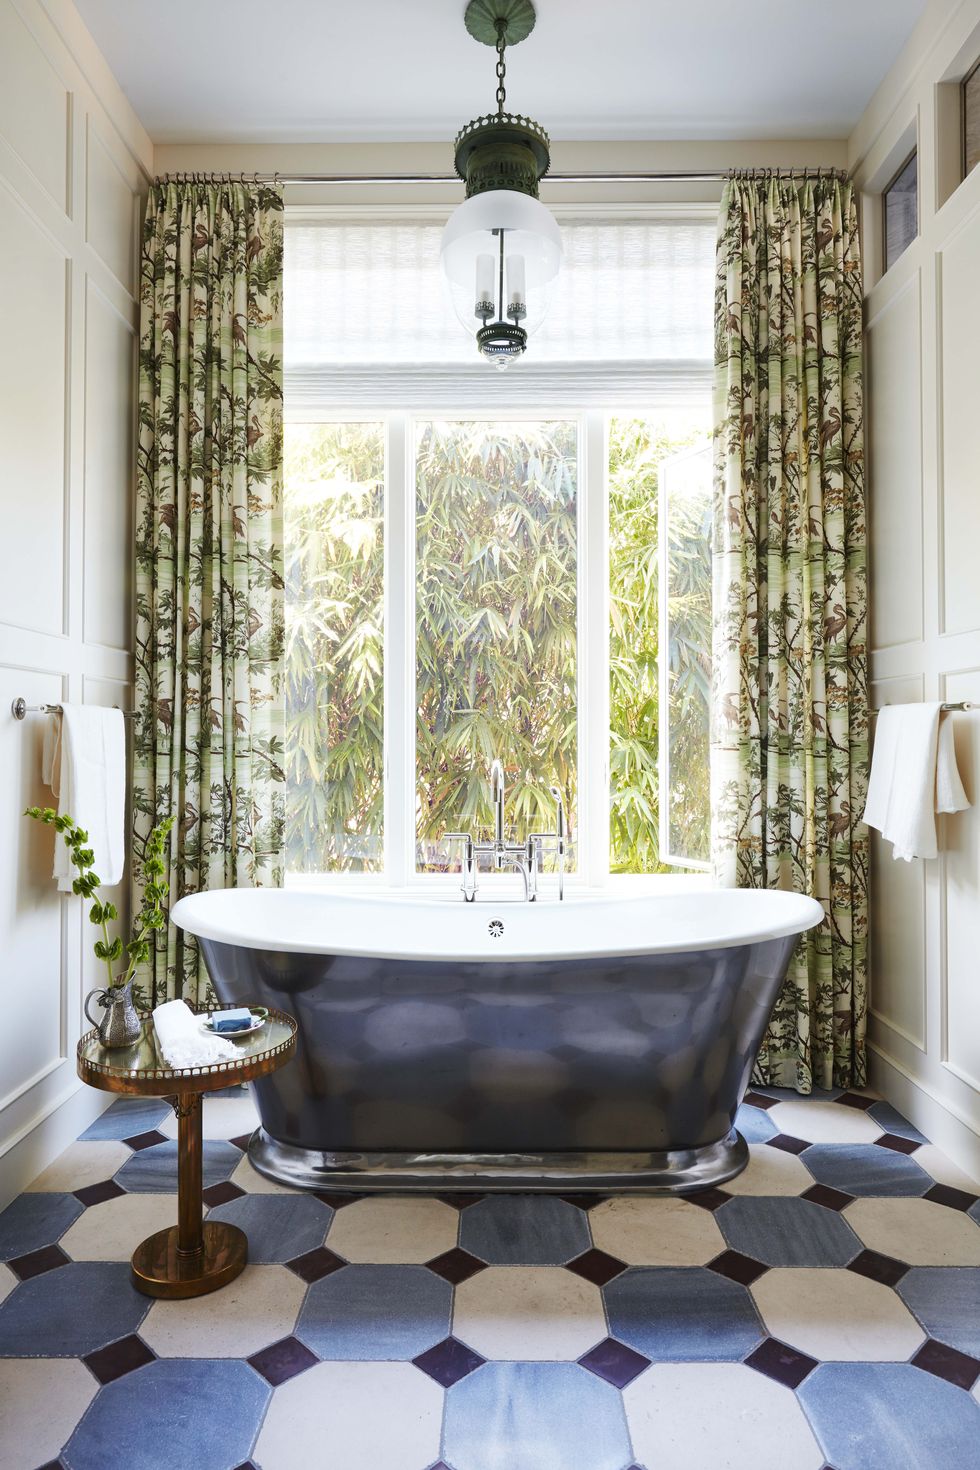 20 Best Luxury Bathtubs - Elegant Modern Bath Tubs